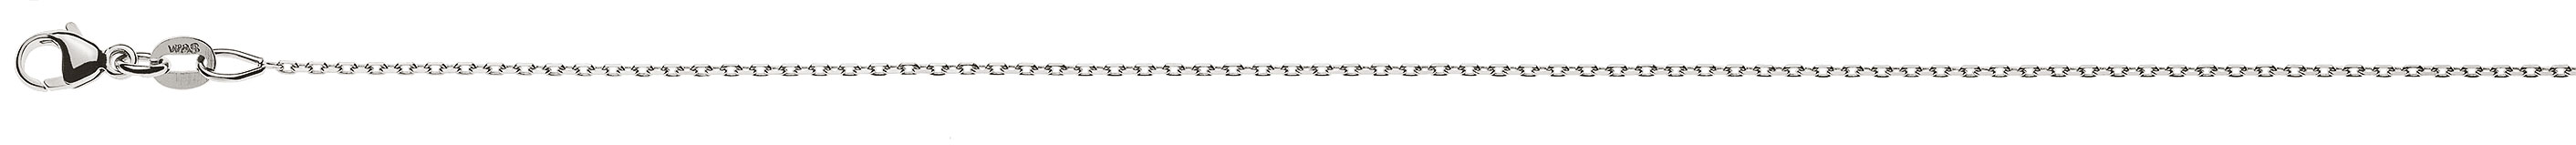 AURONOS Prestige Halskette Weissgold 18K Anker 4-fach geschliffen 40cm 0.9mm